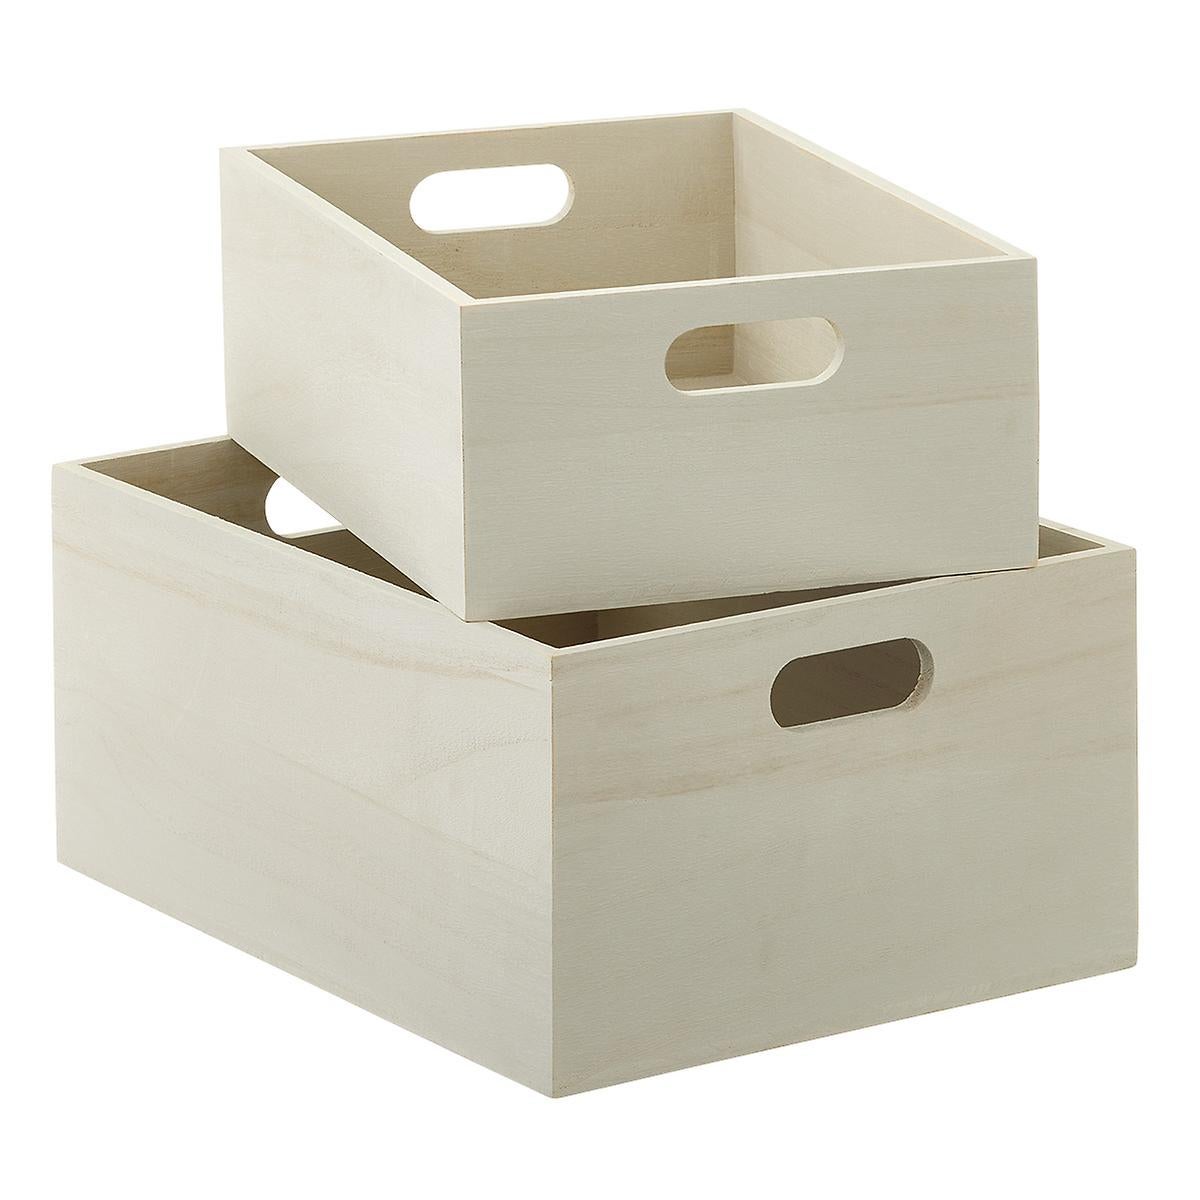 Wooden Storage Bins with Handles